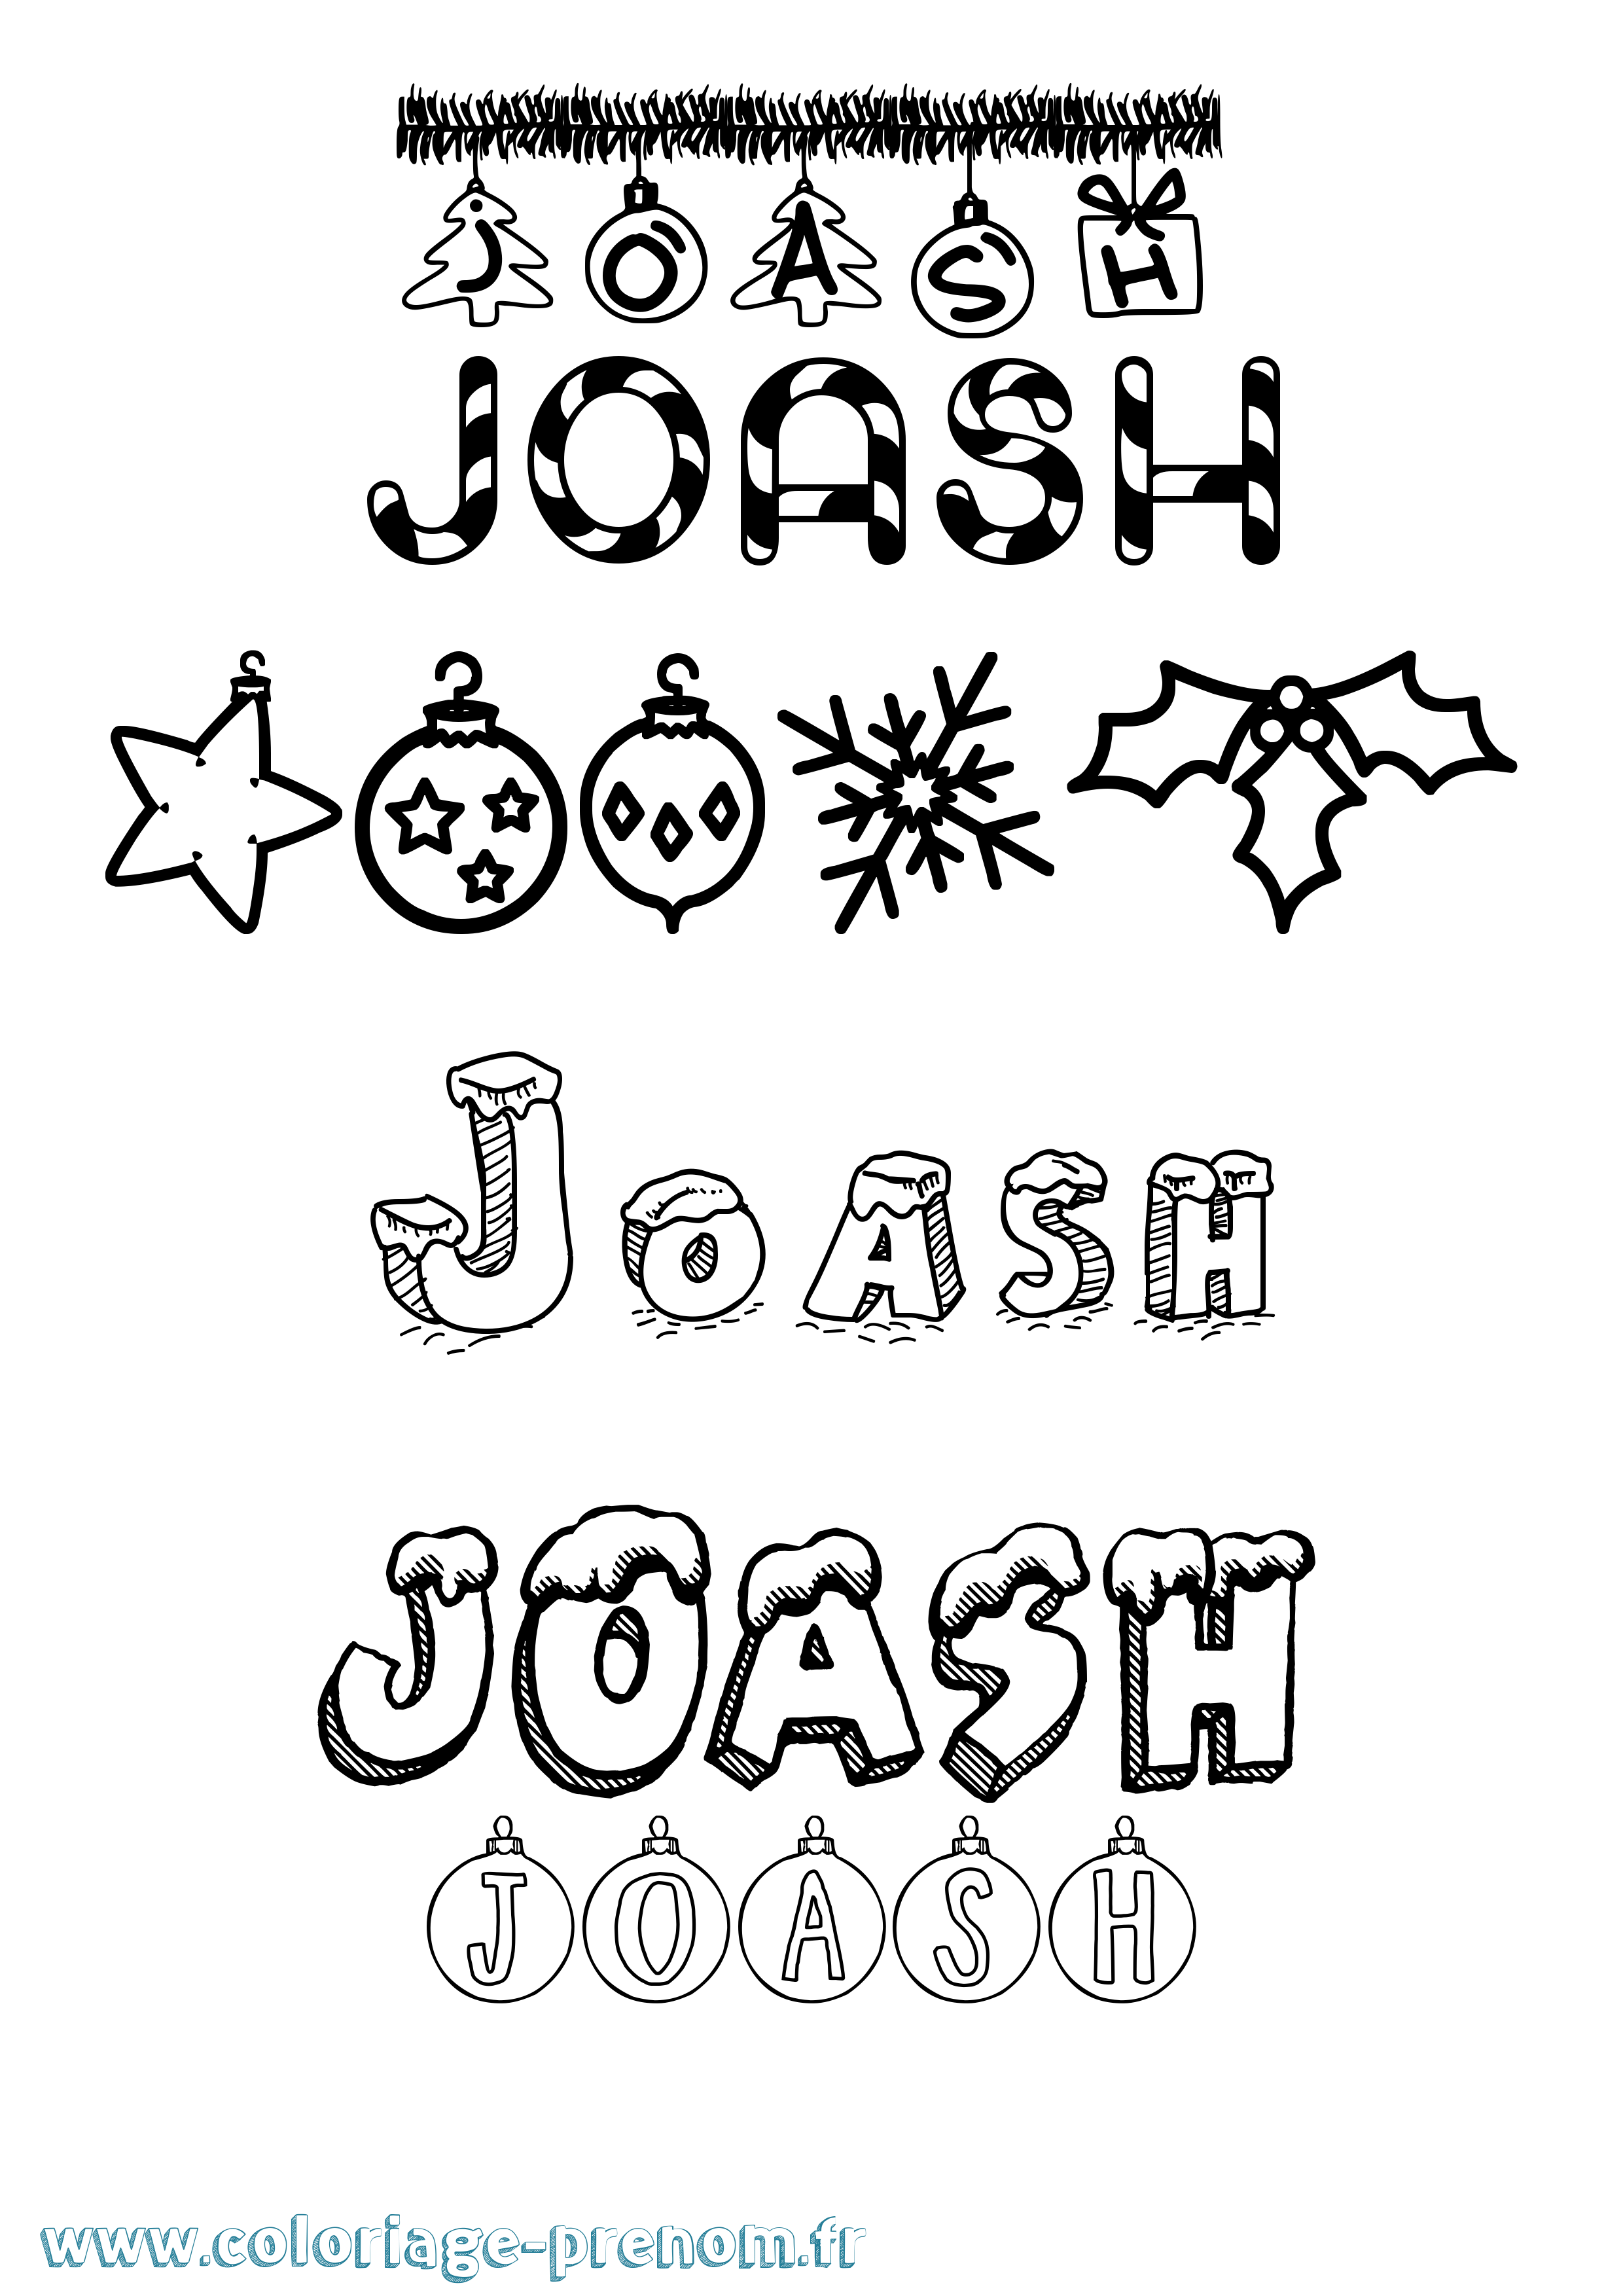 Coloriage prénom Joash Noël